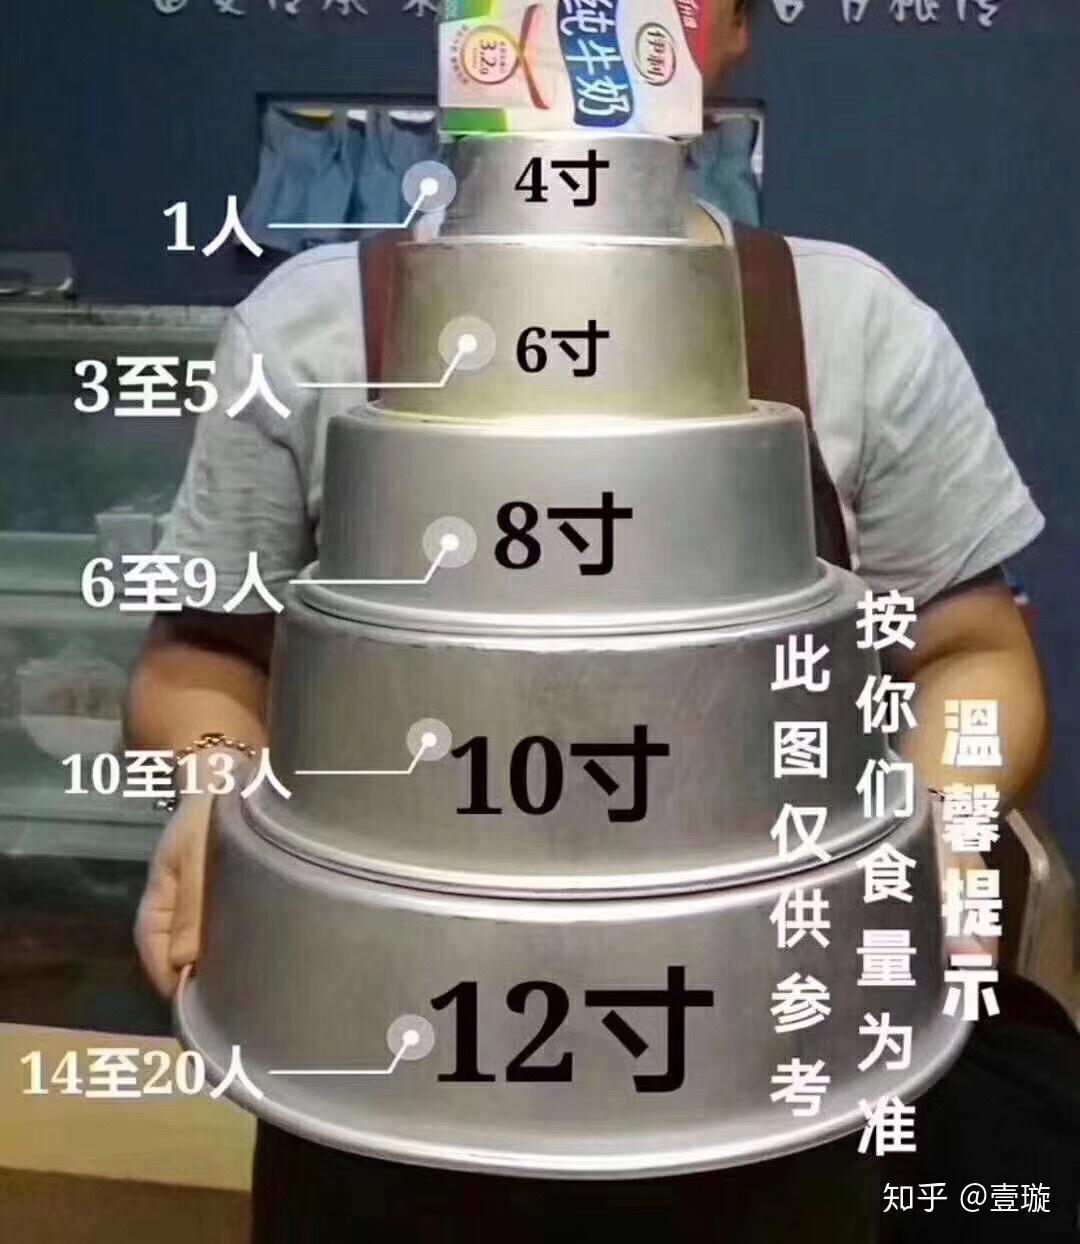 蛋糕12寸够多少人吃?